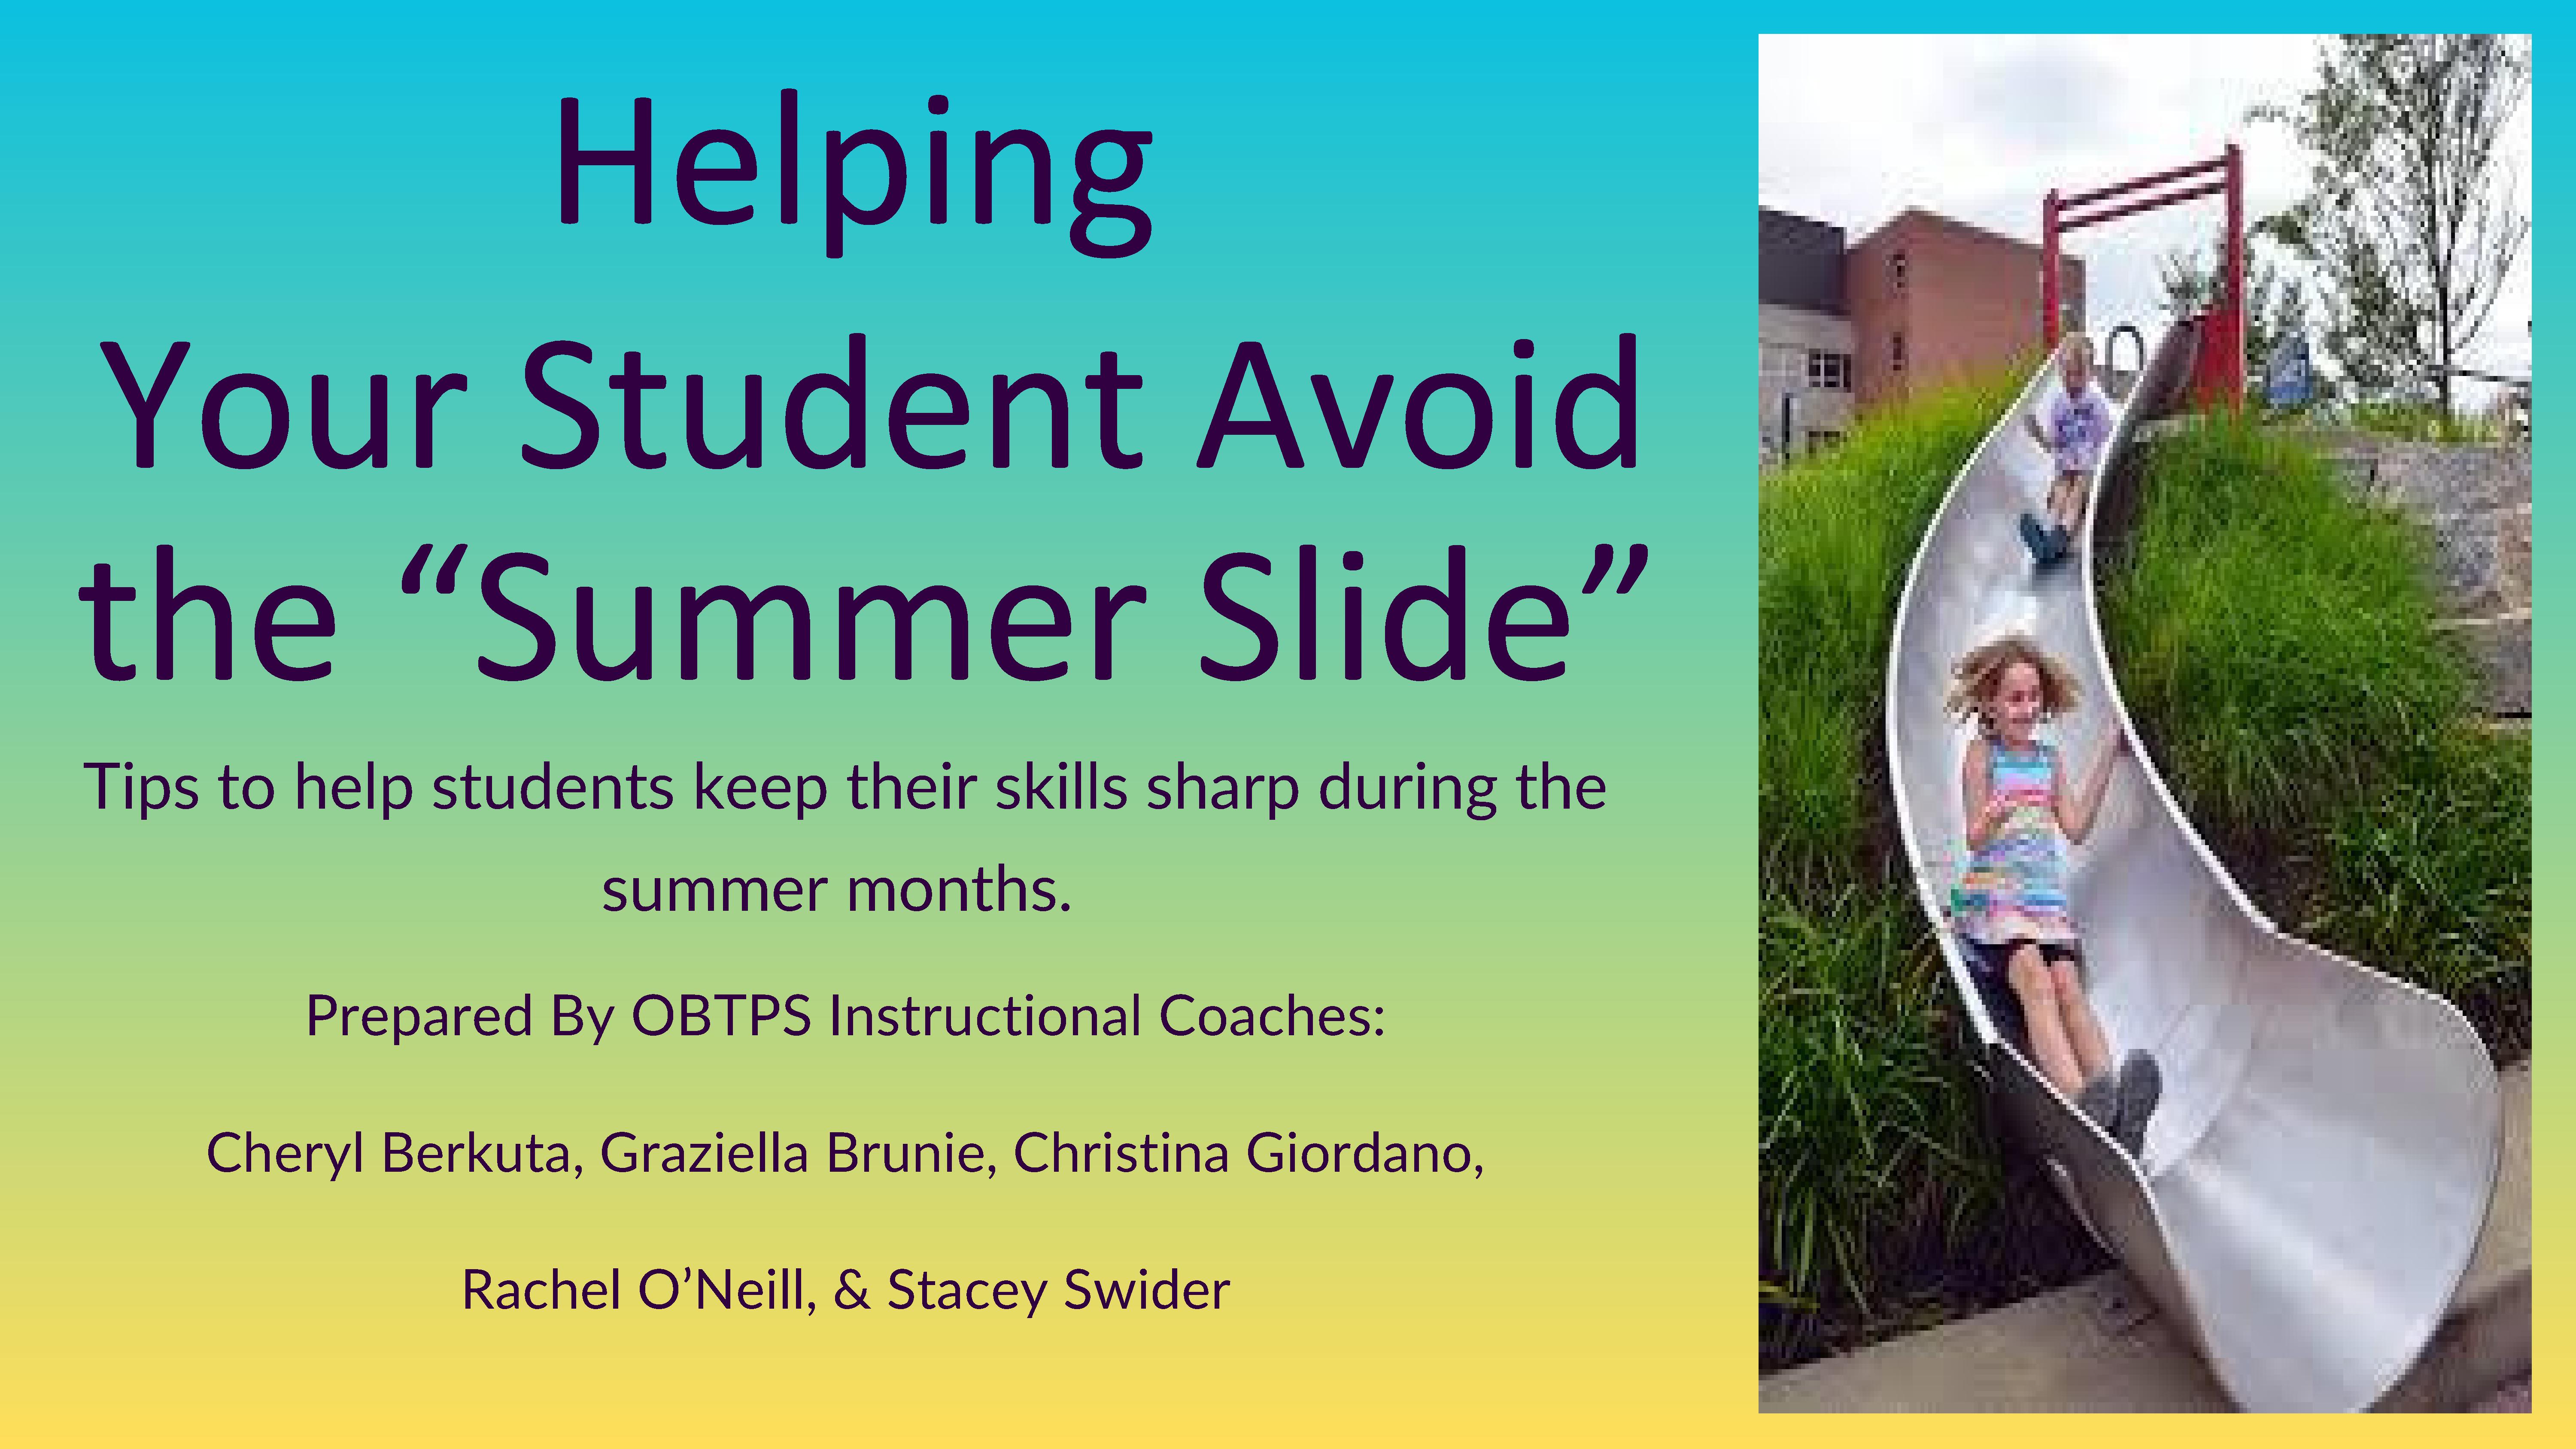 Avoid the Summer Slide Presentation - https://5il.co/2oizk